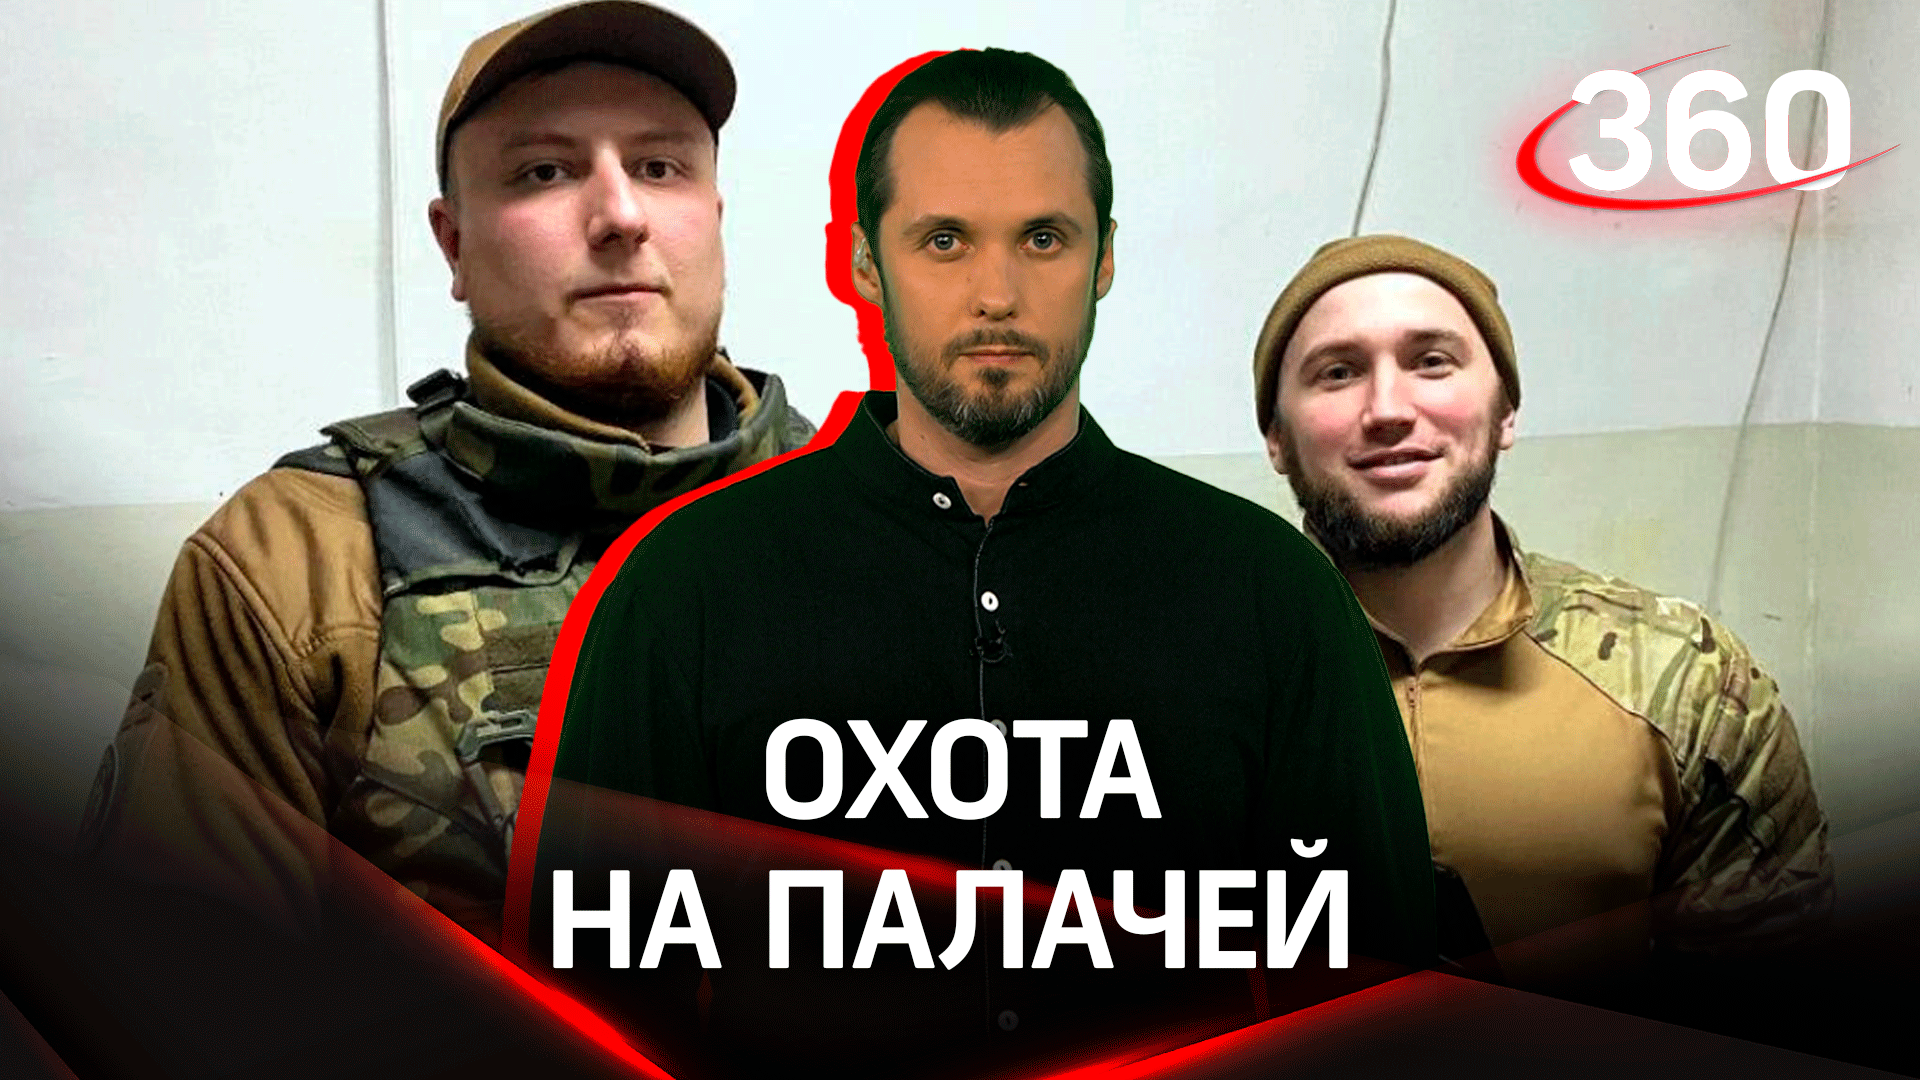 Российский спецназ охотится на Константина Немичева и Сергея Величко